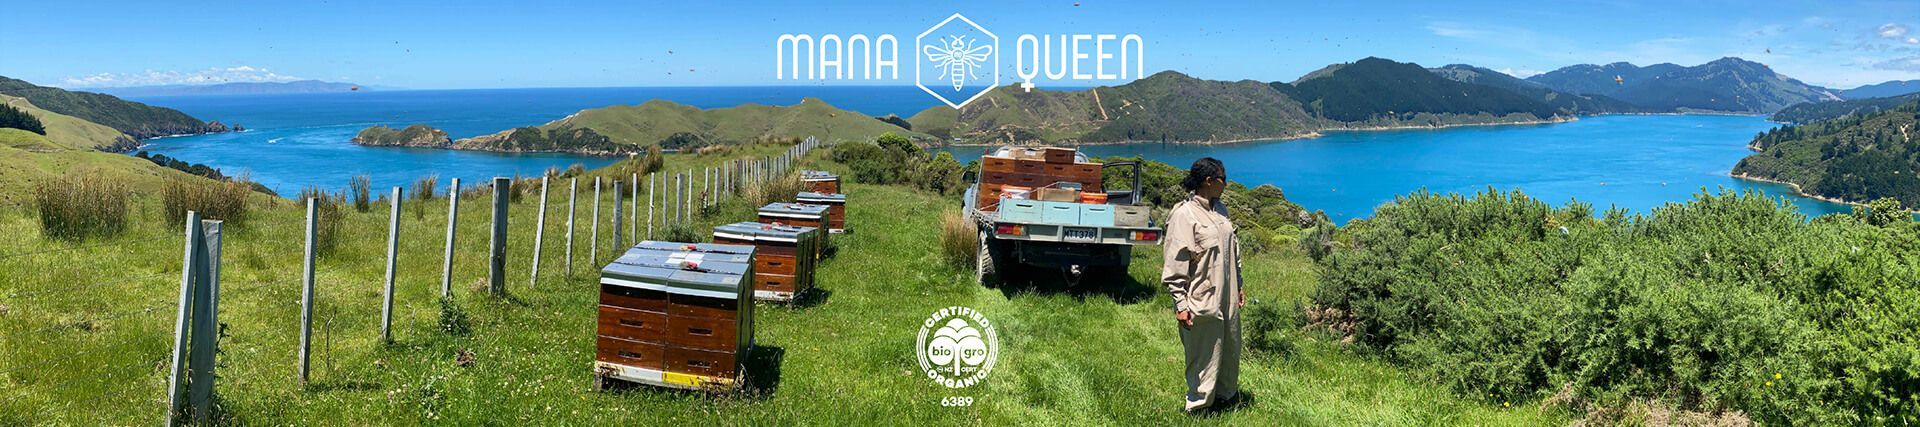 Mana Queen branding by Vanilla Hayes Ltd in Blenheim, New Zealand